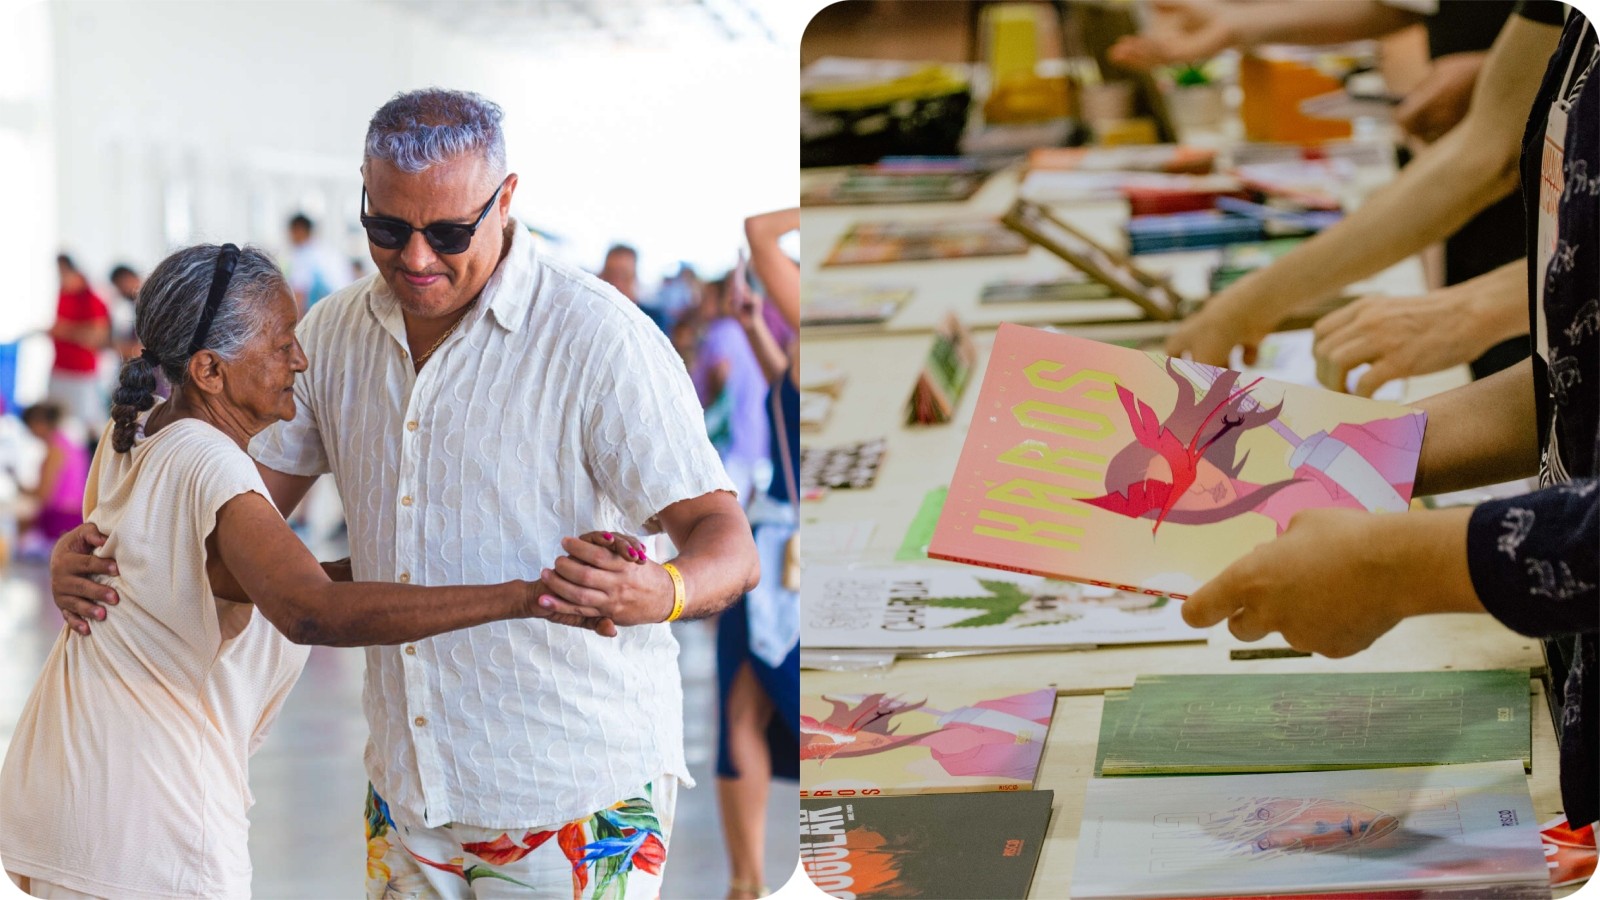 Programação para idosos, festival de fotografia, evento de quadrinhos: cultura e lazer marcam Fortaleza neste fim de semana